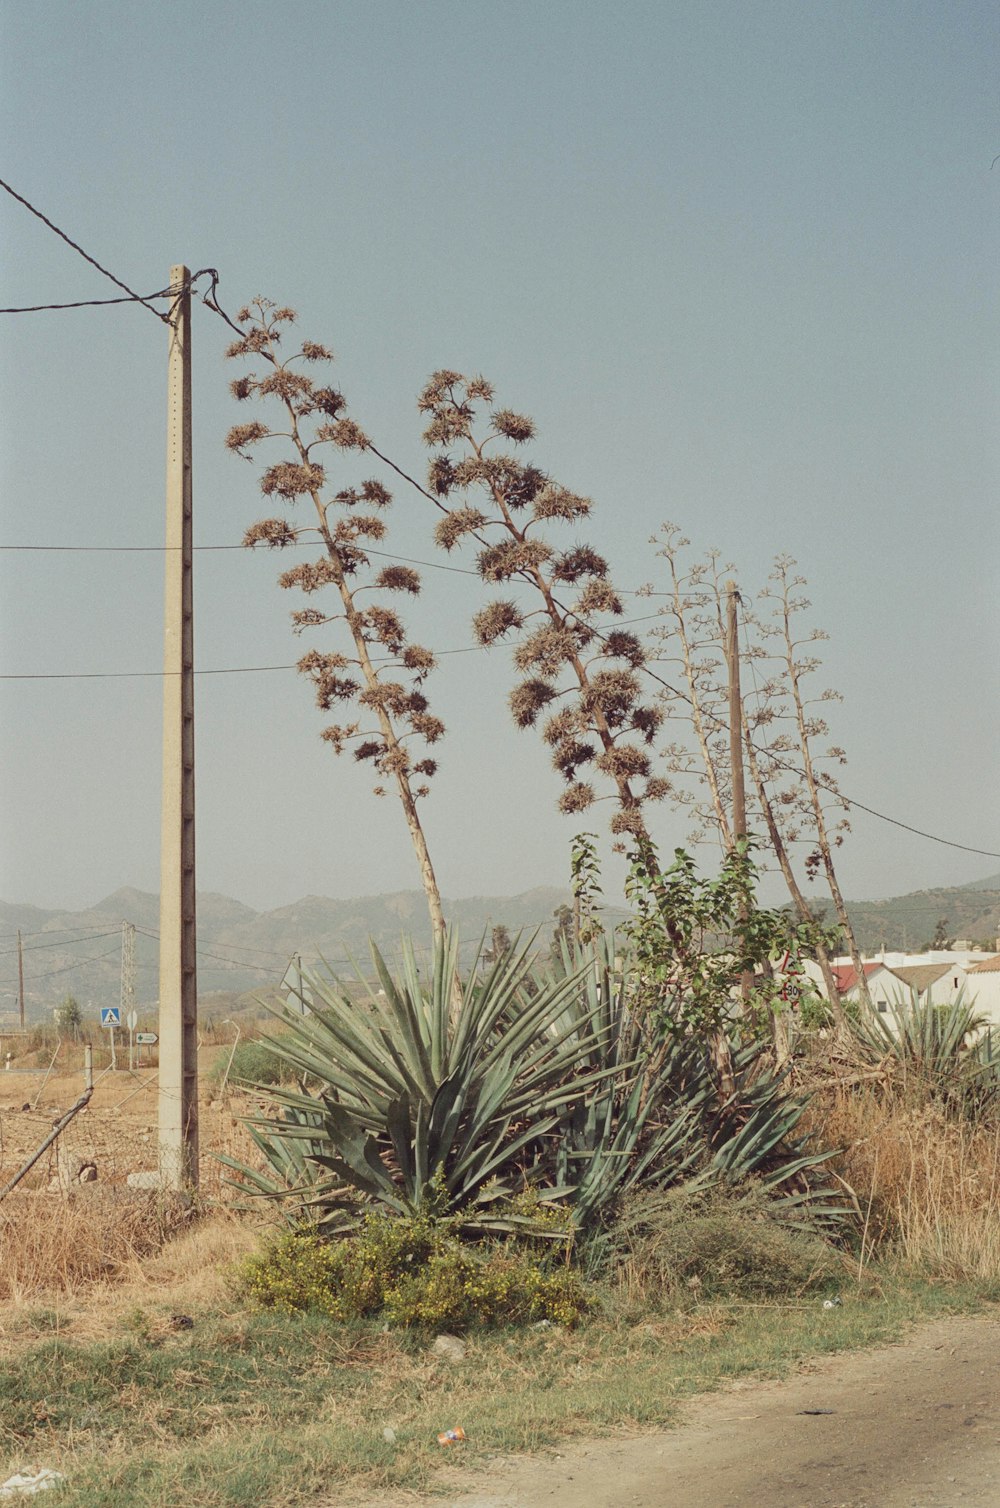 a cactus in a field